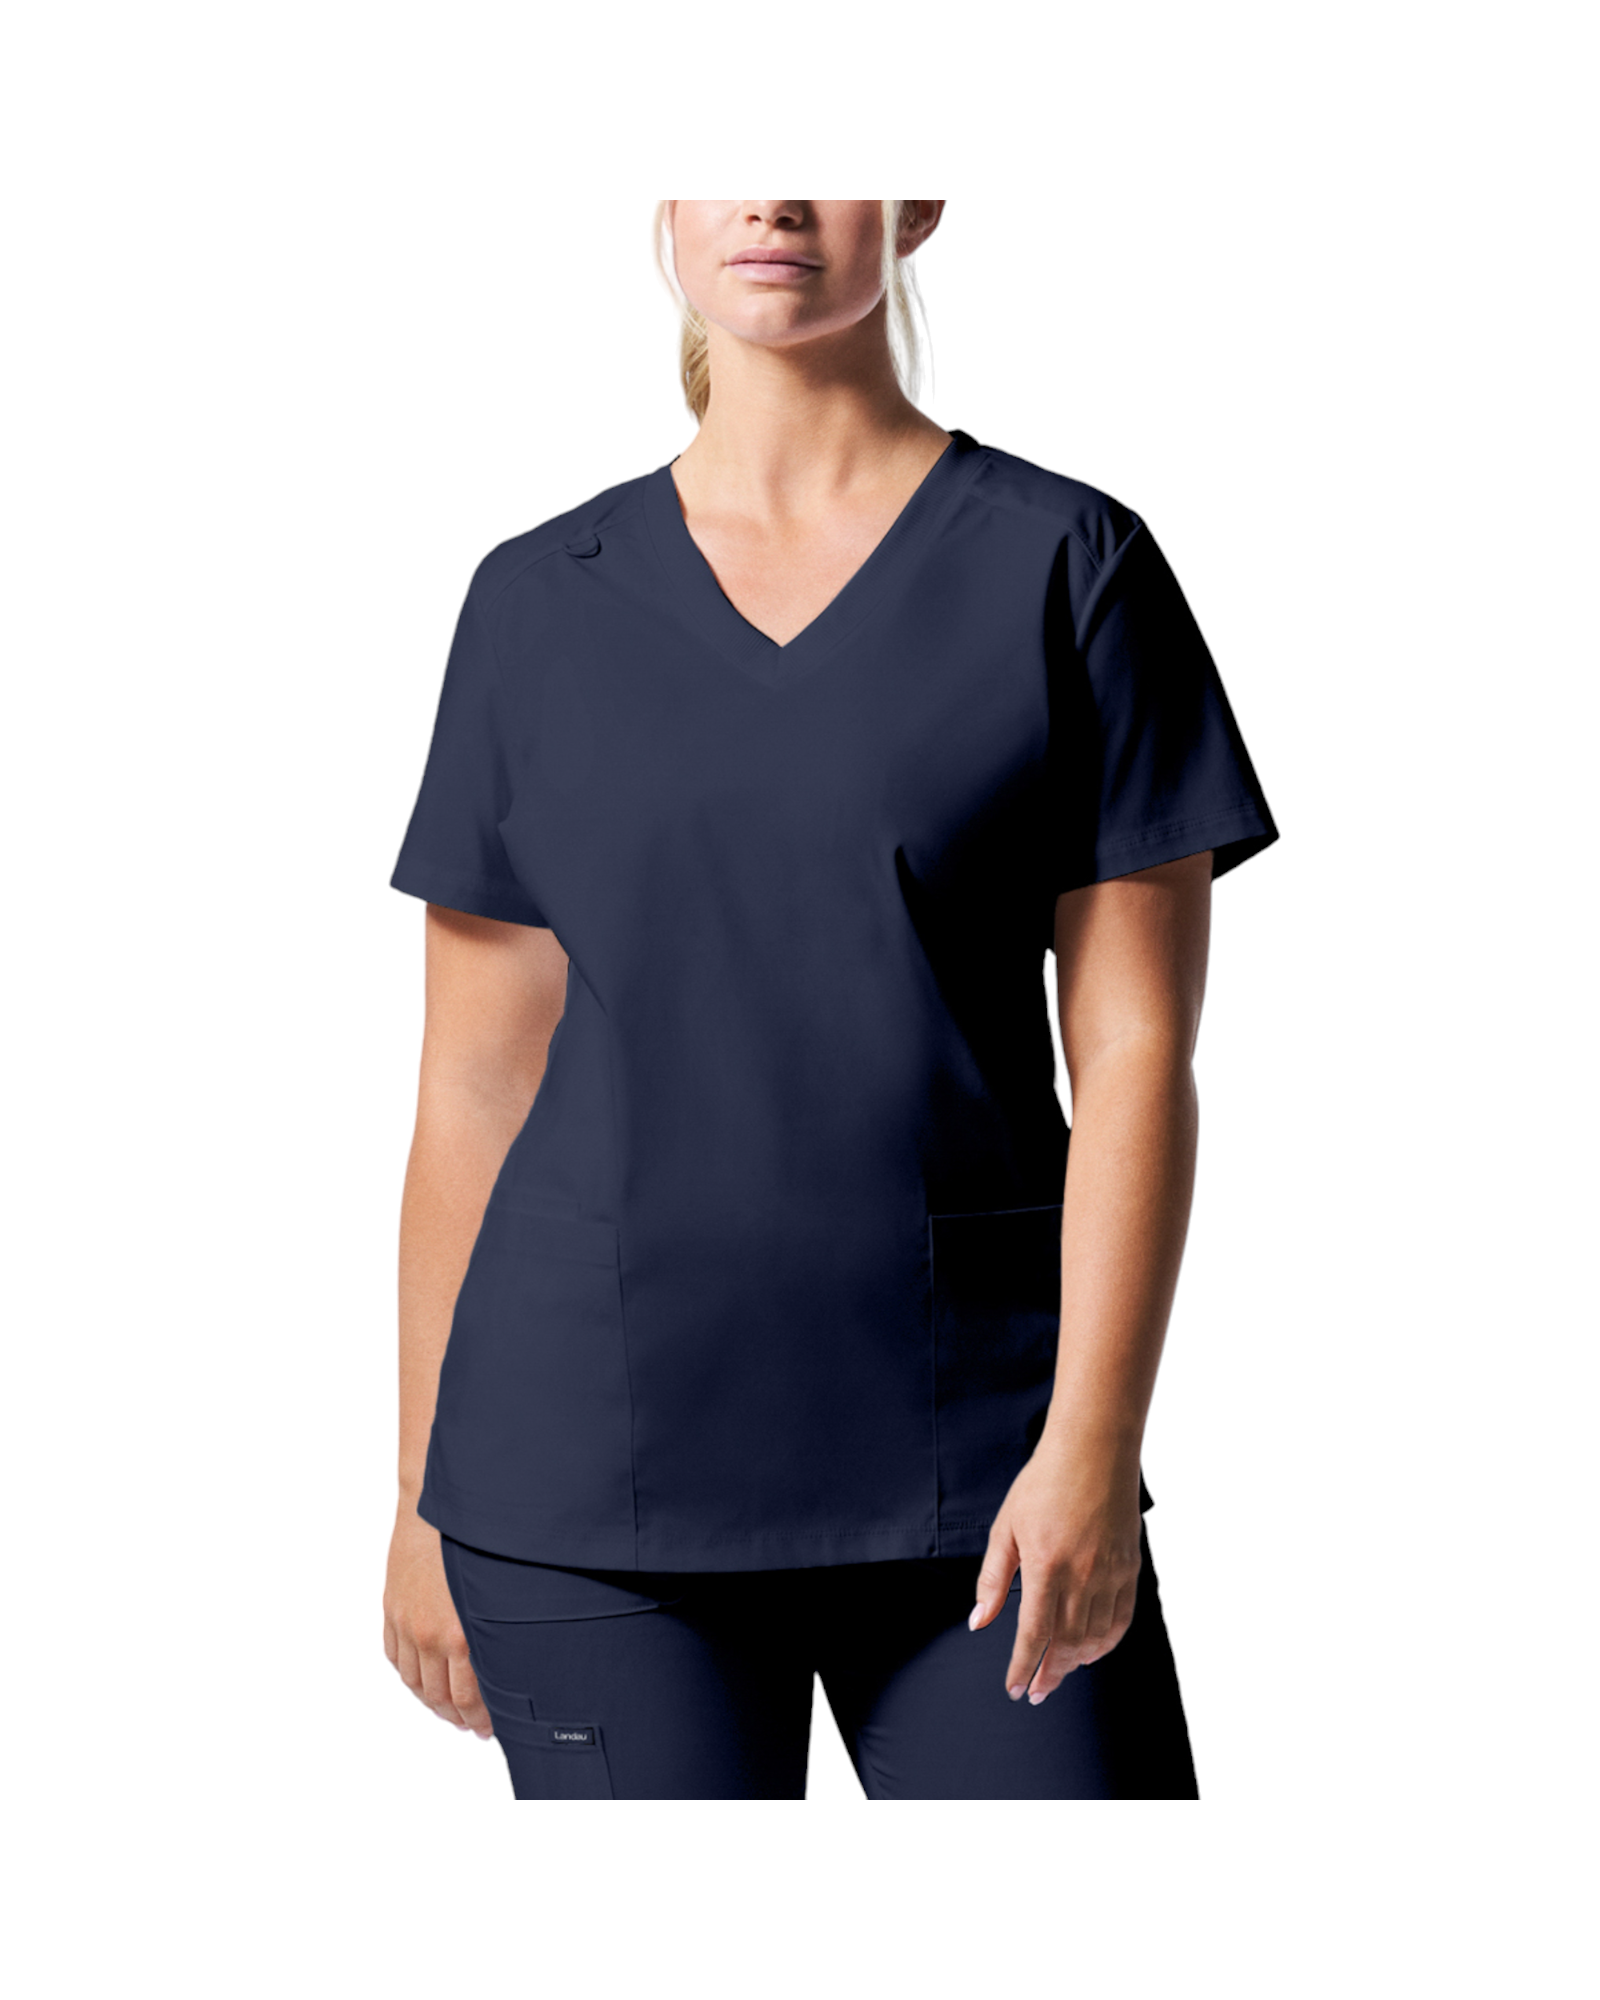 Uniforme de marque landau pour femmes. Travailleuses du domaine de la santé. LT105 couleur True Navy, col en V.